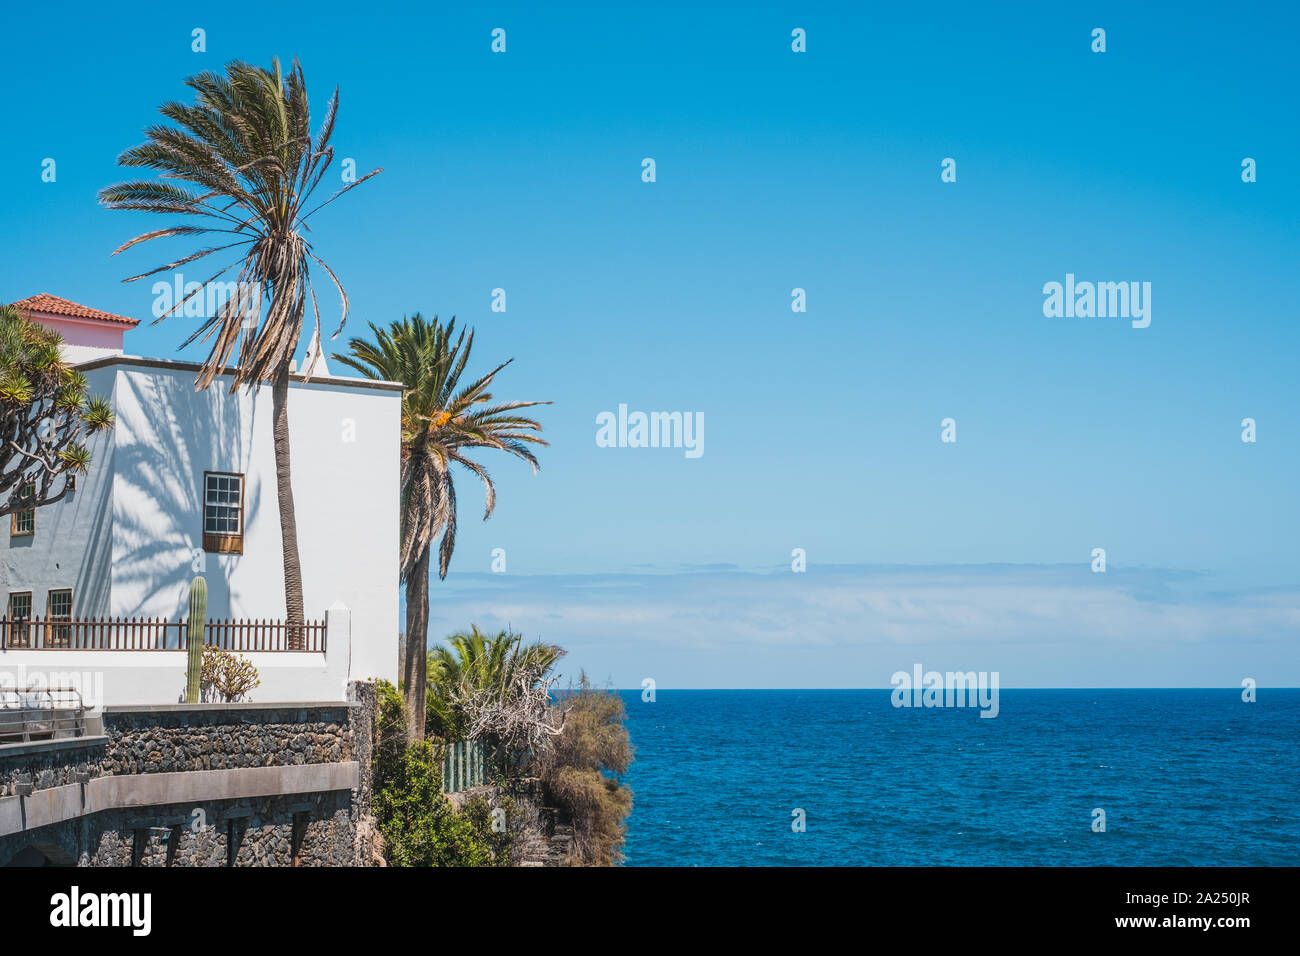 Haus mit Blick auf das Meer, Palmen und blauem Himmel Kopie Raum - Kanarische Inseln Stockfoto